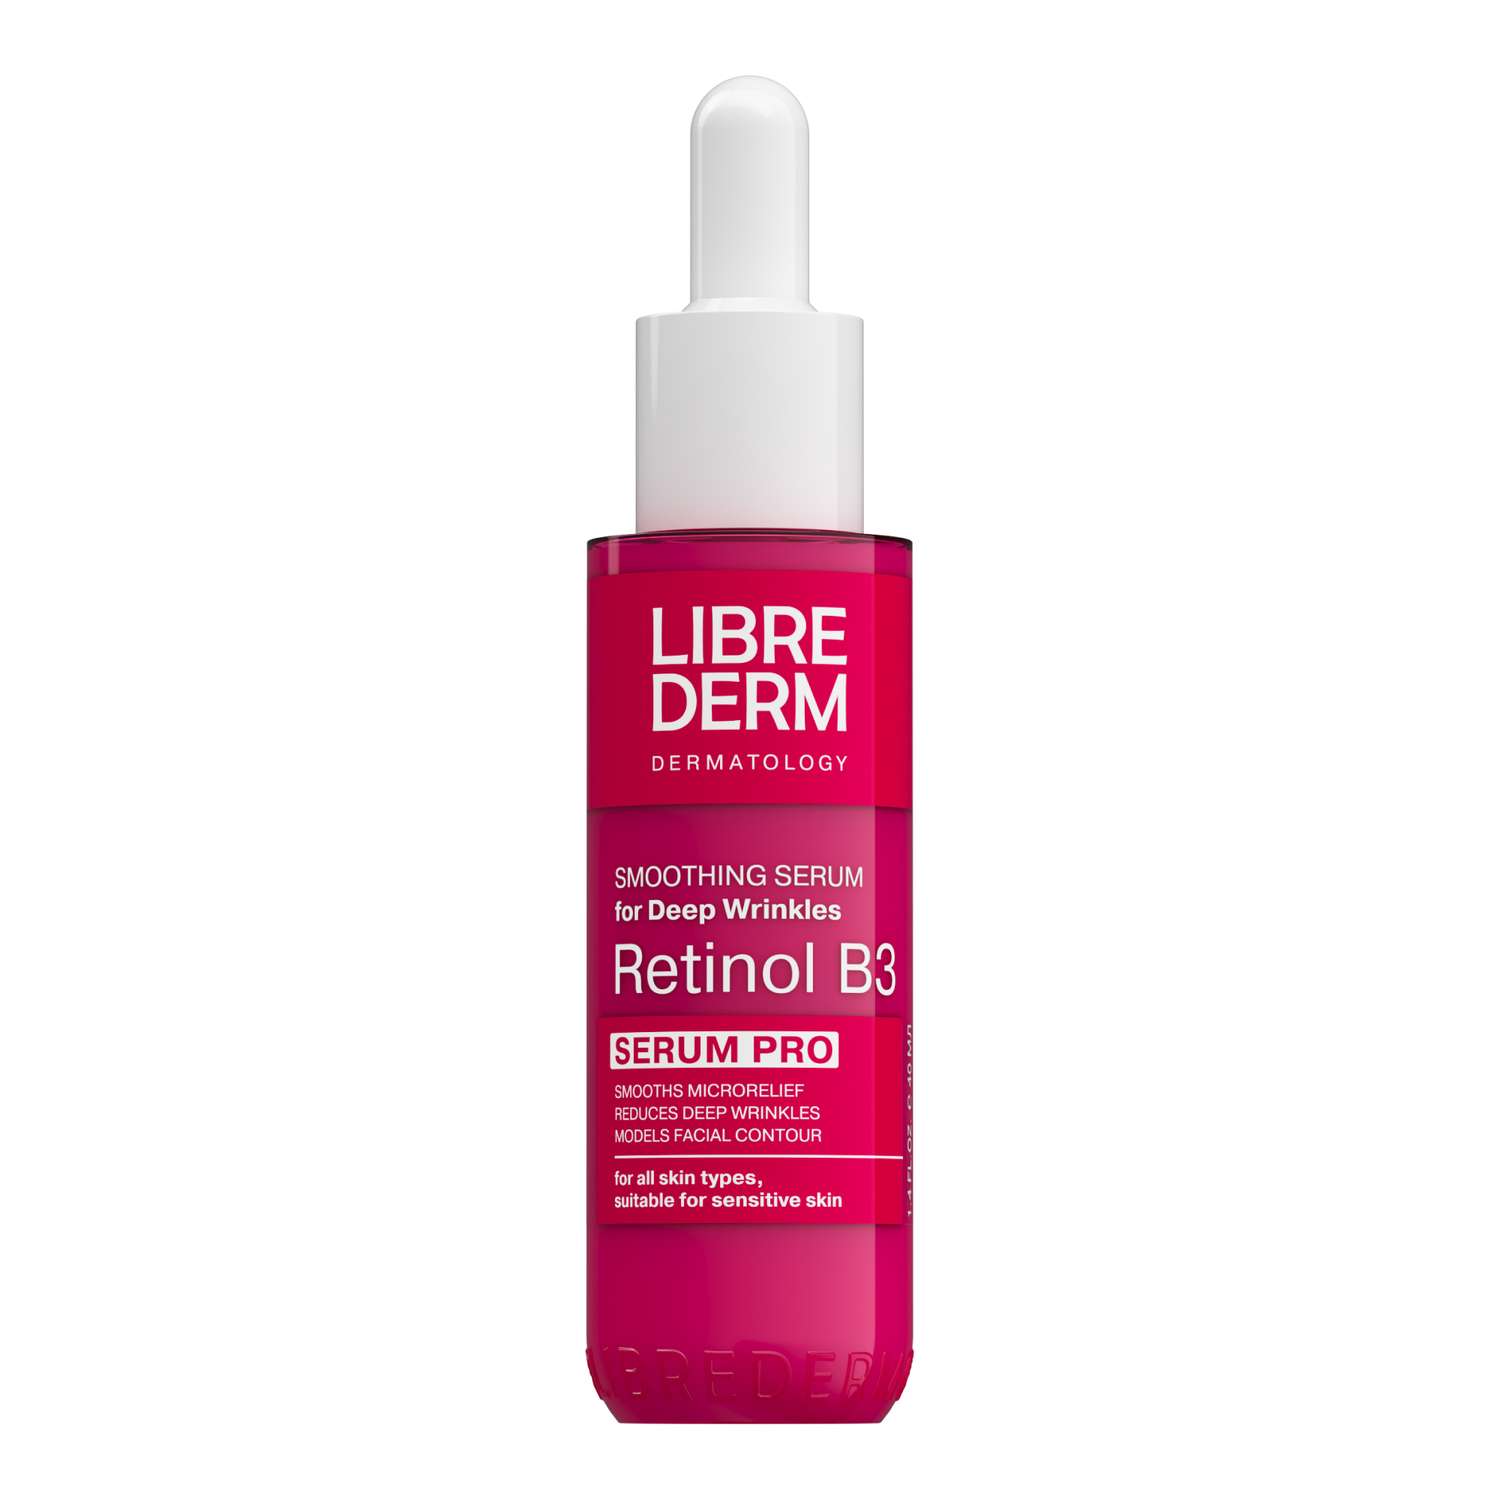 Сыворотка для лица Librederm serum pro интенсивная против морщин Retinol B3 40 мл - фото 1